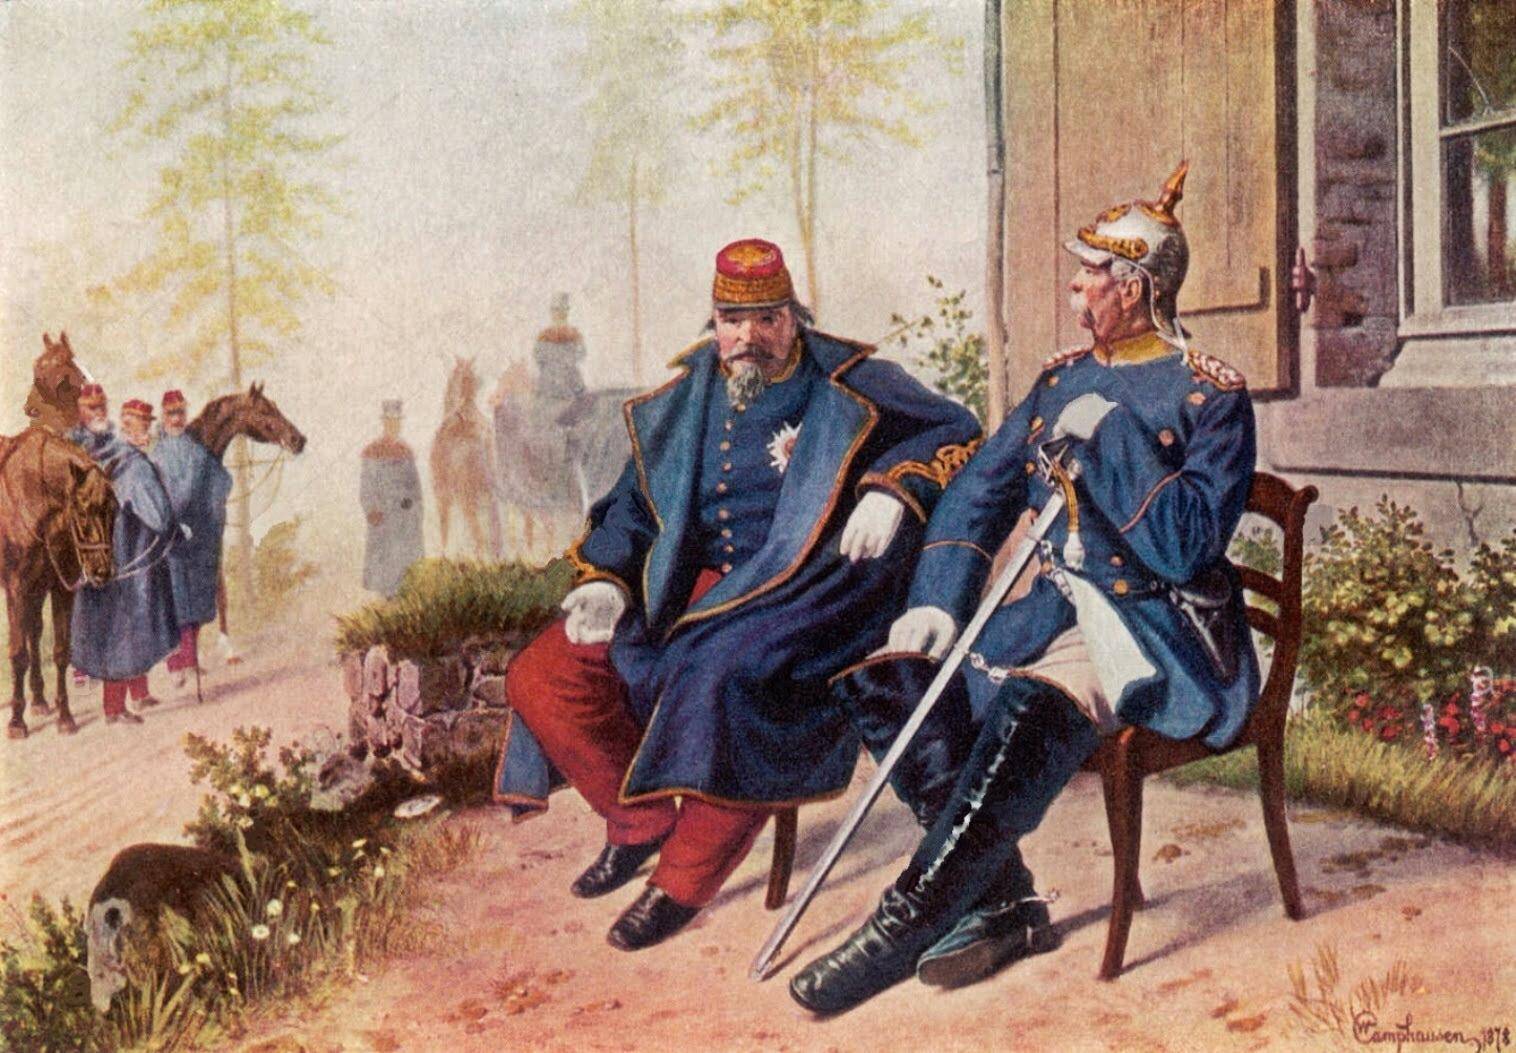 Napoléon III en conversation avec Bismarck à Donchery, le 2 septembre 1870.
Wilhelm Camphausen CC By SA